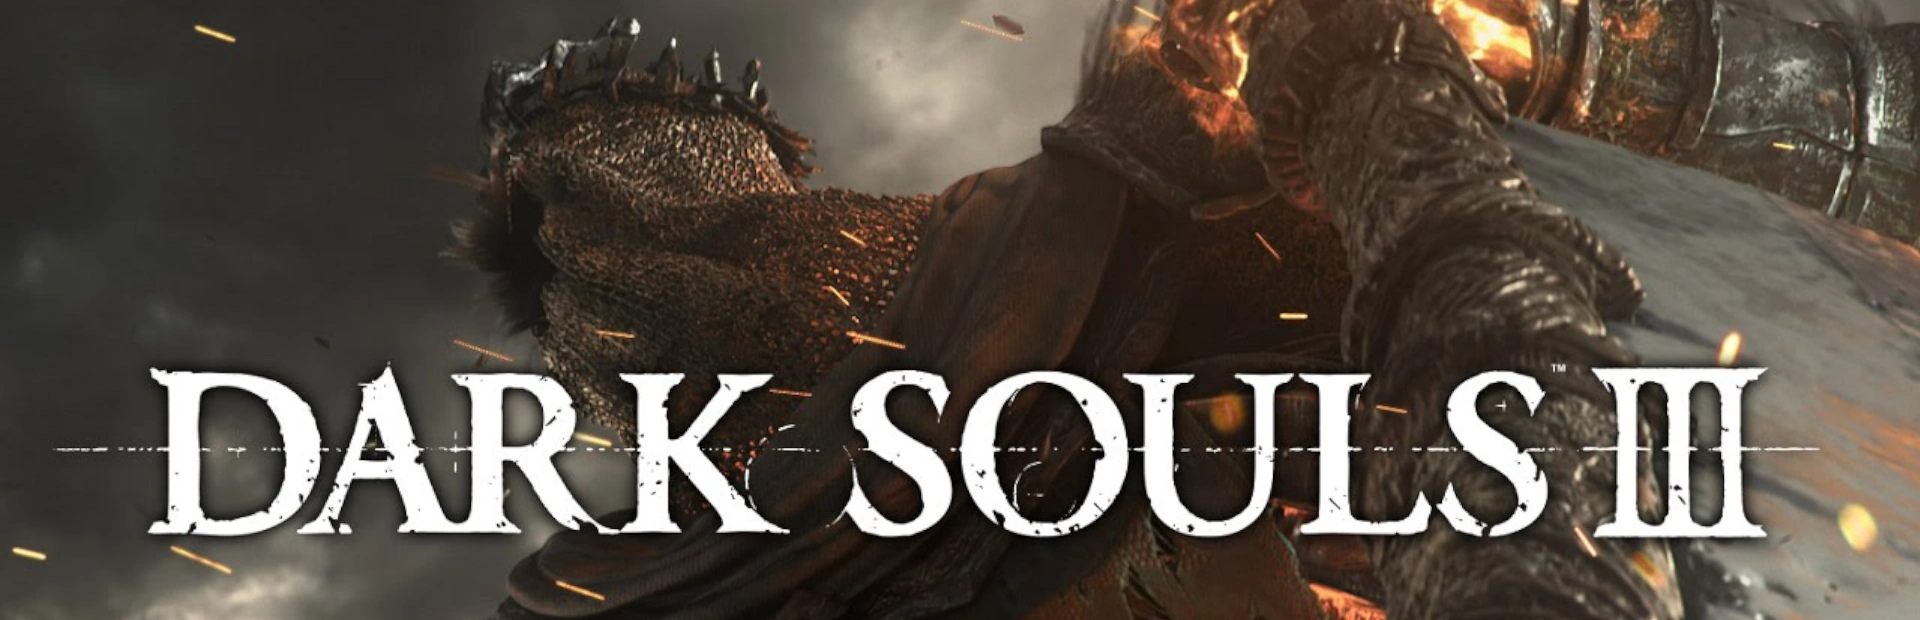 دانلود بازی Dark Souls III برای کامپیوتر | گیمباتو 